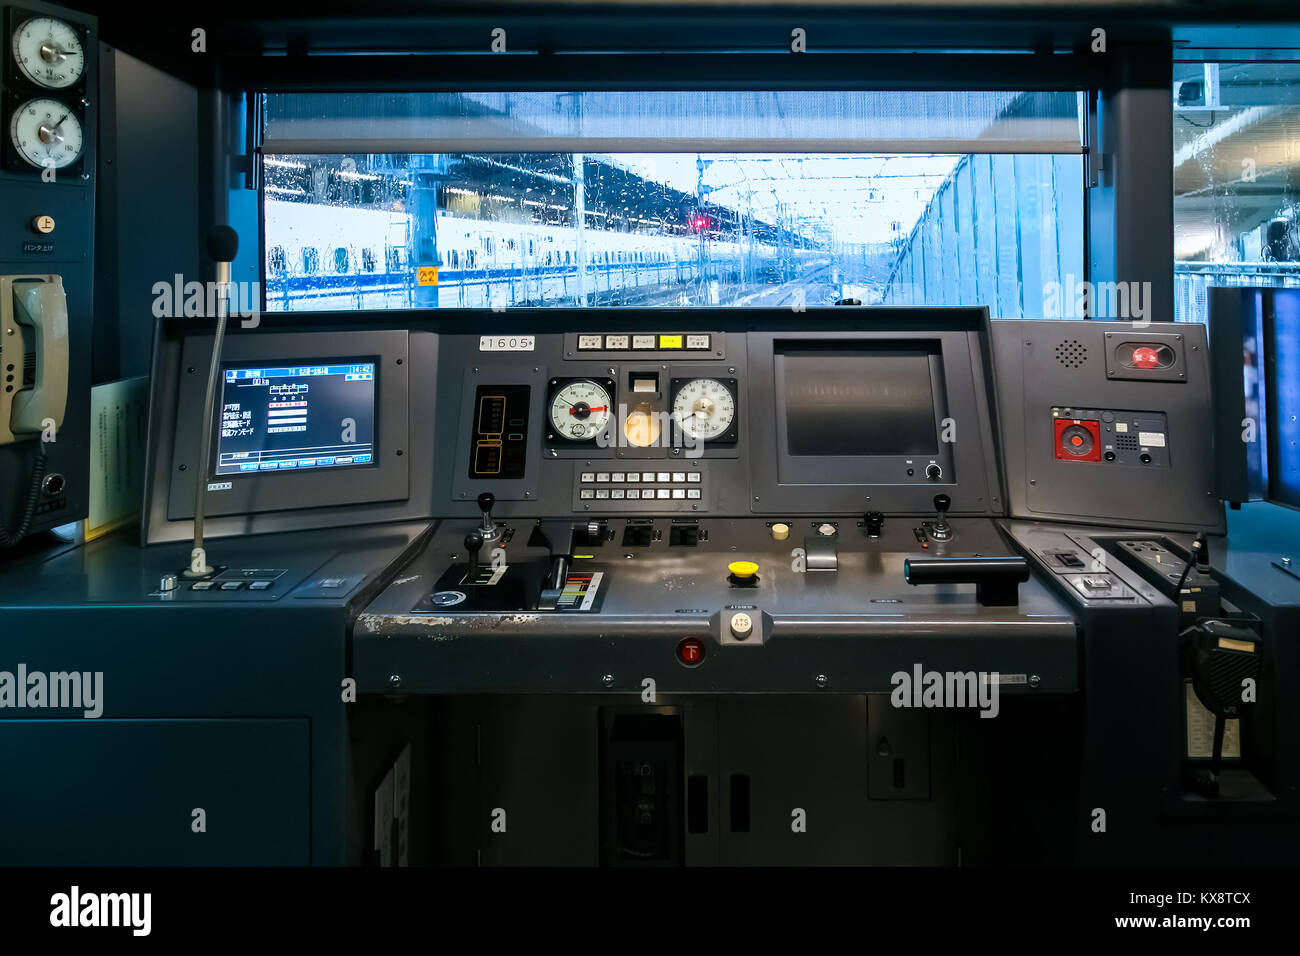 NAGOYA, Japan - 18. NOVEMBER 2015: Innenraum der Kabine mit Dashboards auf einem japanischen Zug Stockfoto